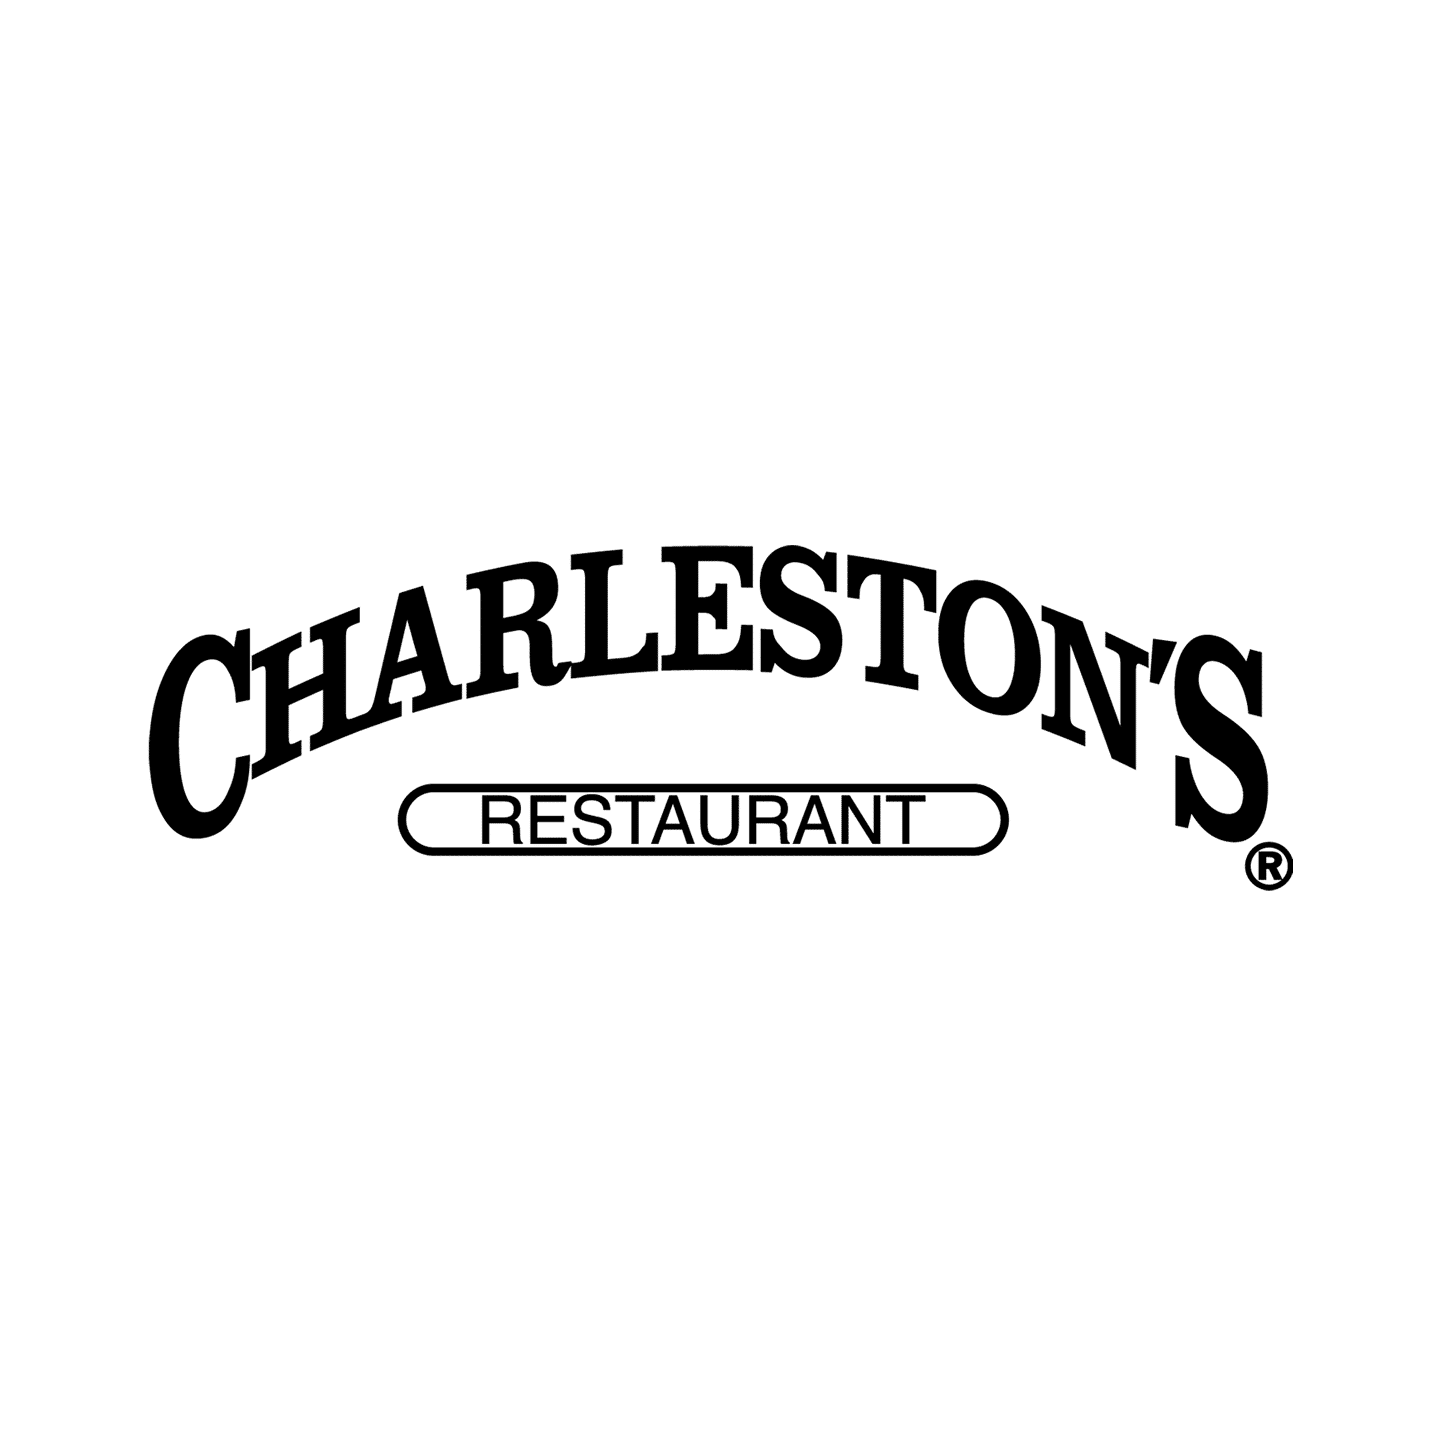 Charleston’s